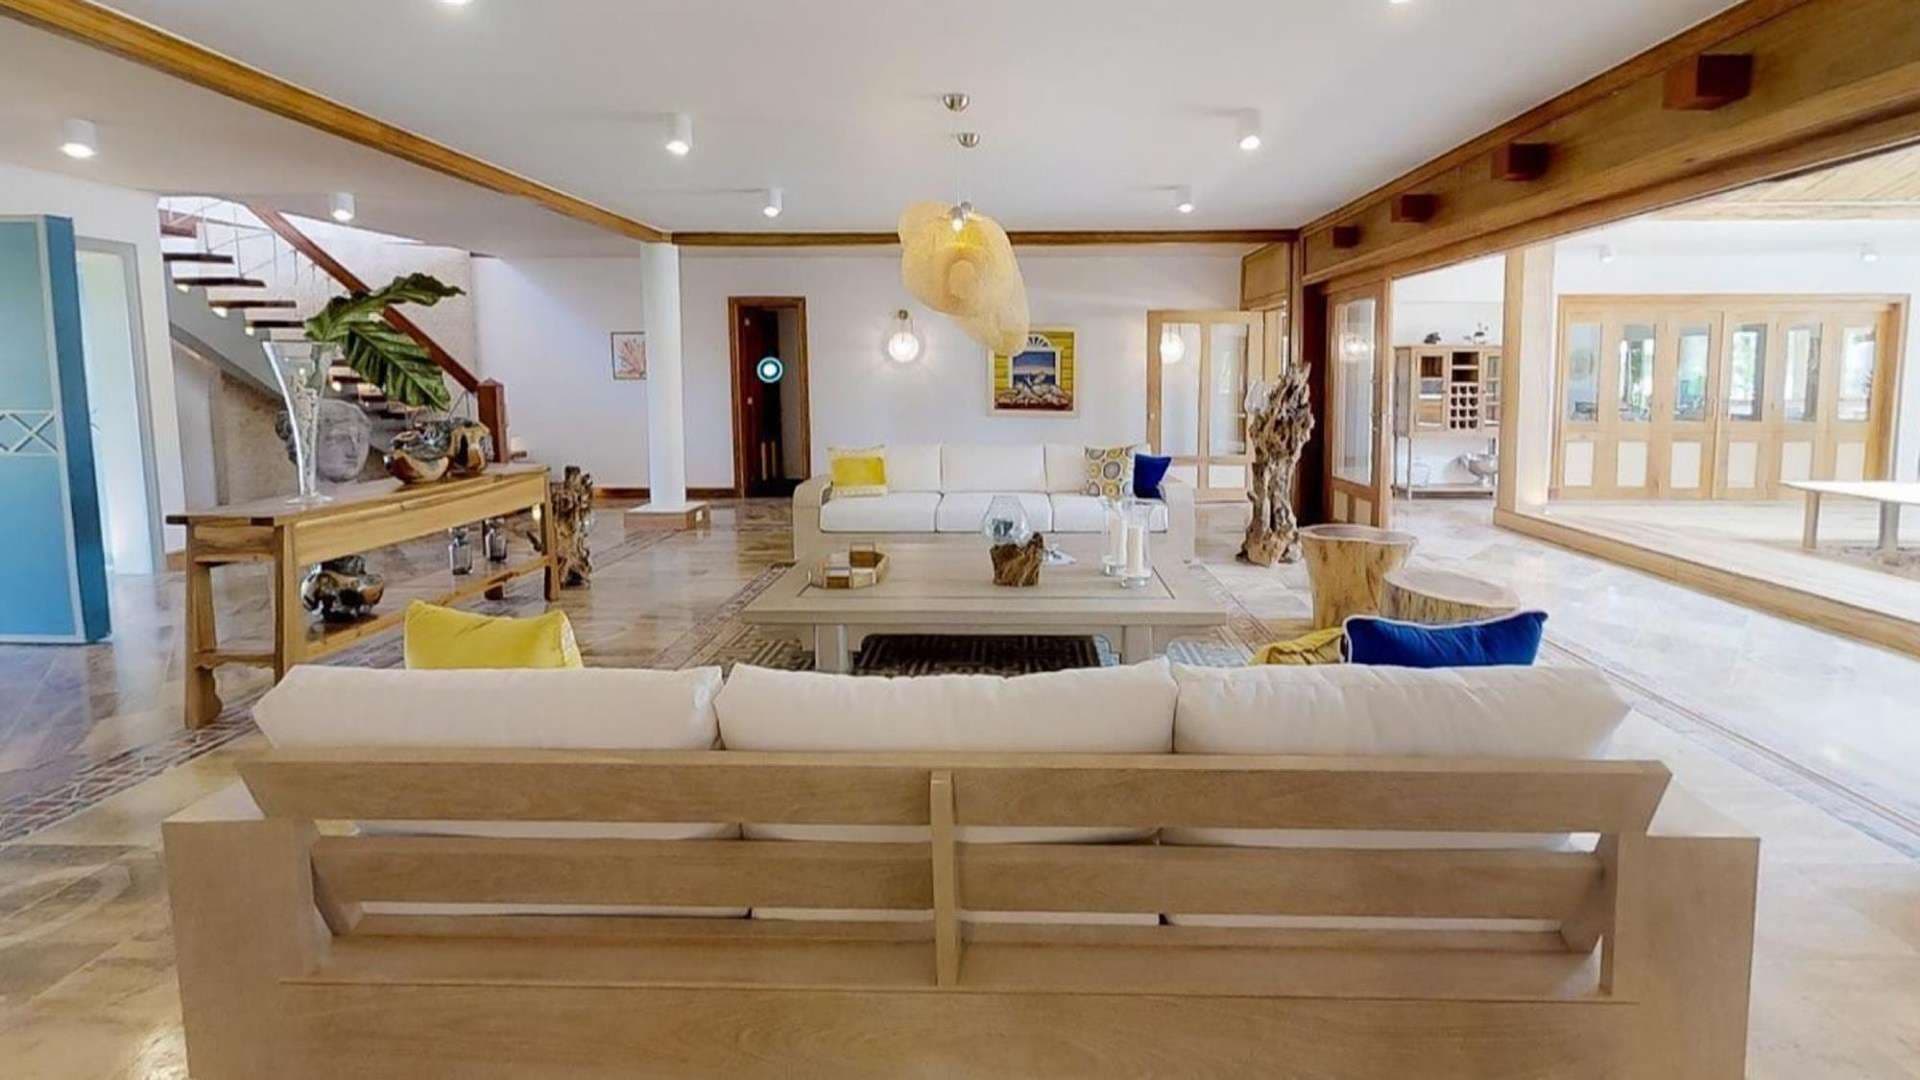 5 Bedroom Villa For Sale Villa En Punta Majagua Cap Cana Lp05008 86c3cefbc60db80.jpg